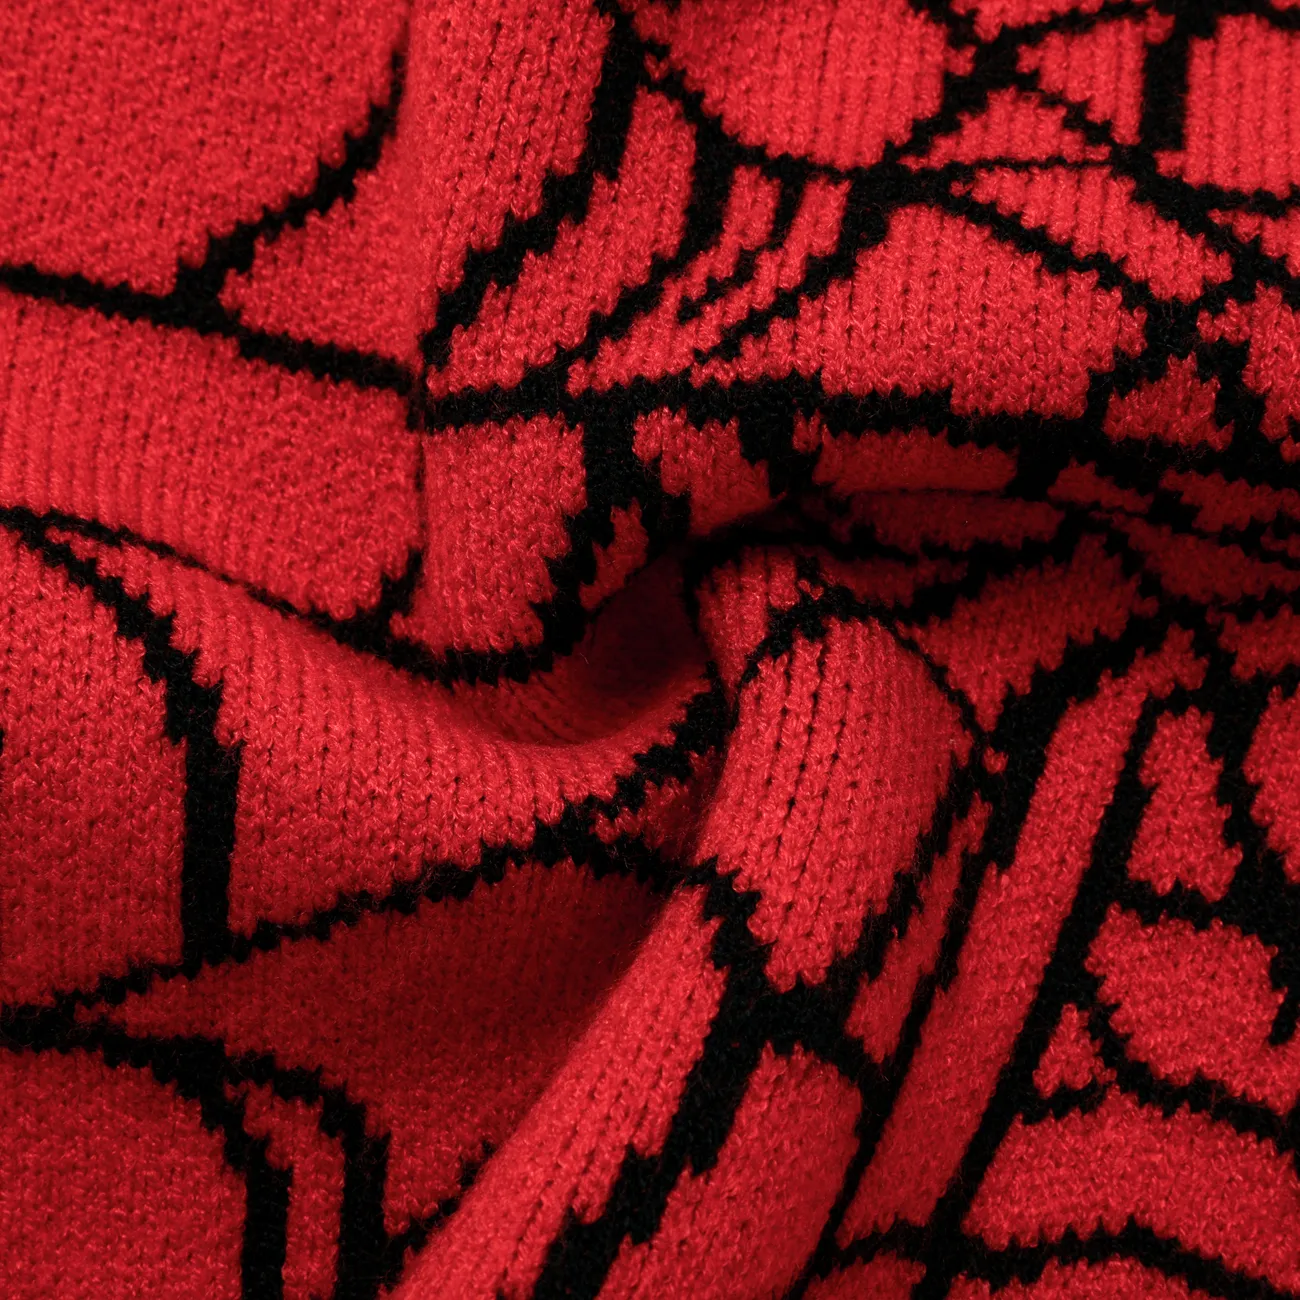 Kleinkind/Kind Junge Geometrischer Spinnennetz-Design-Muster-Oversize-Pullover rot big image 1